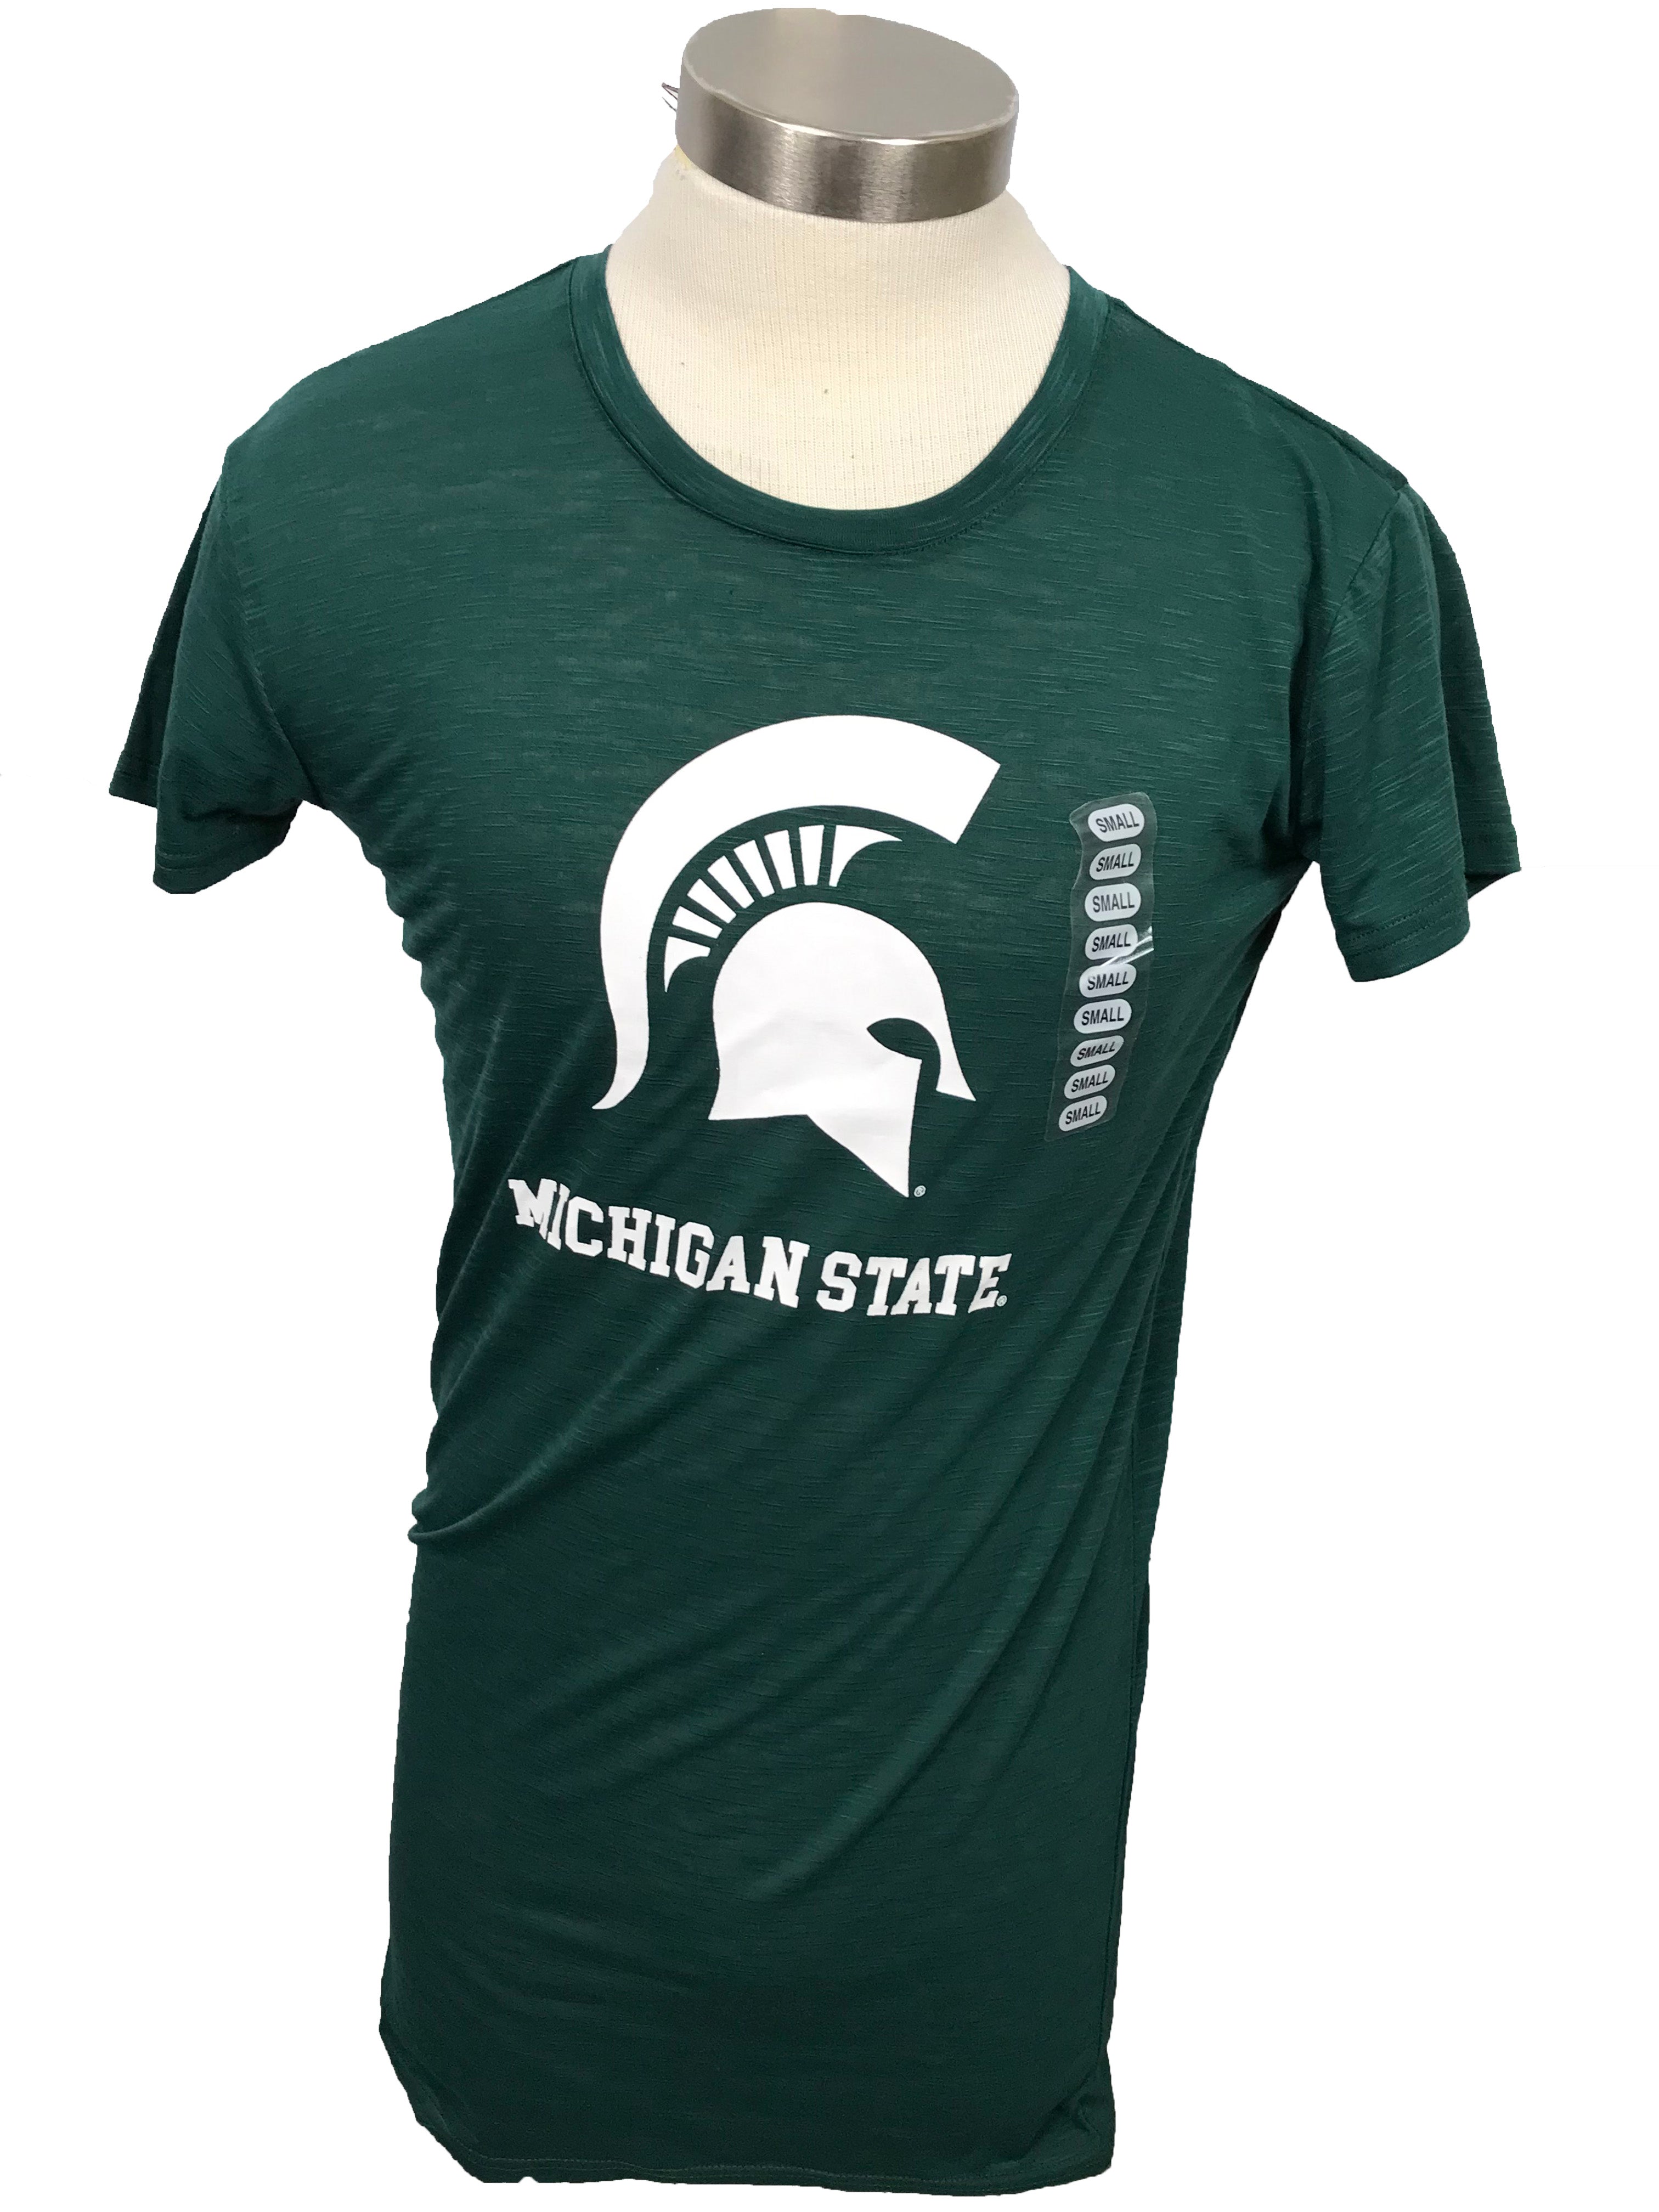 Michigan State University Green T-Shirt Unisex Size XS